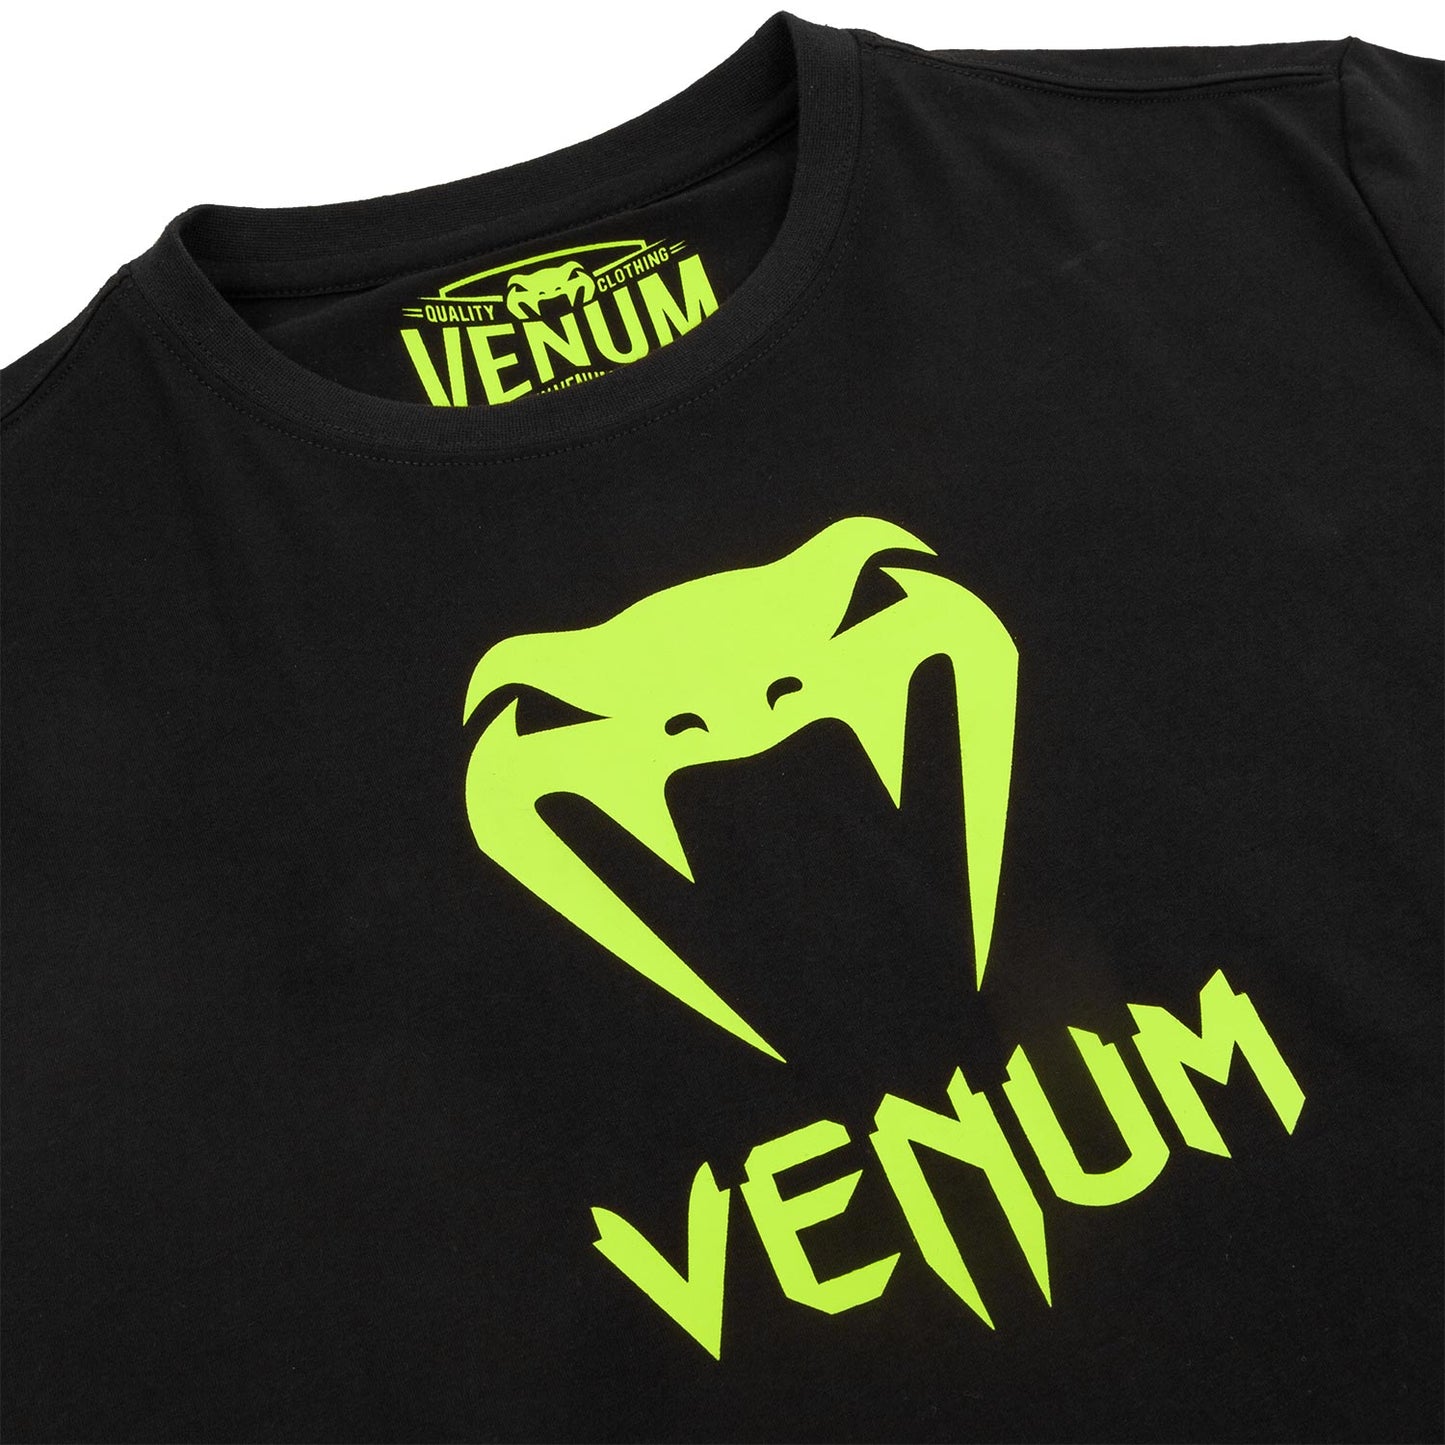 Camiseta Venum Classic - Negro/Amarillo Fluo